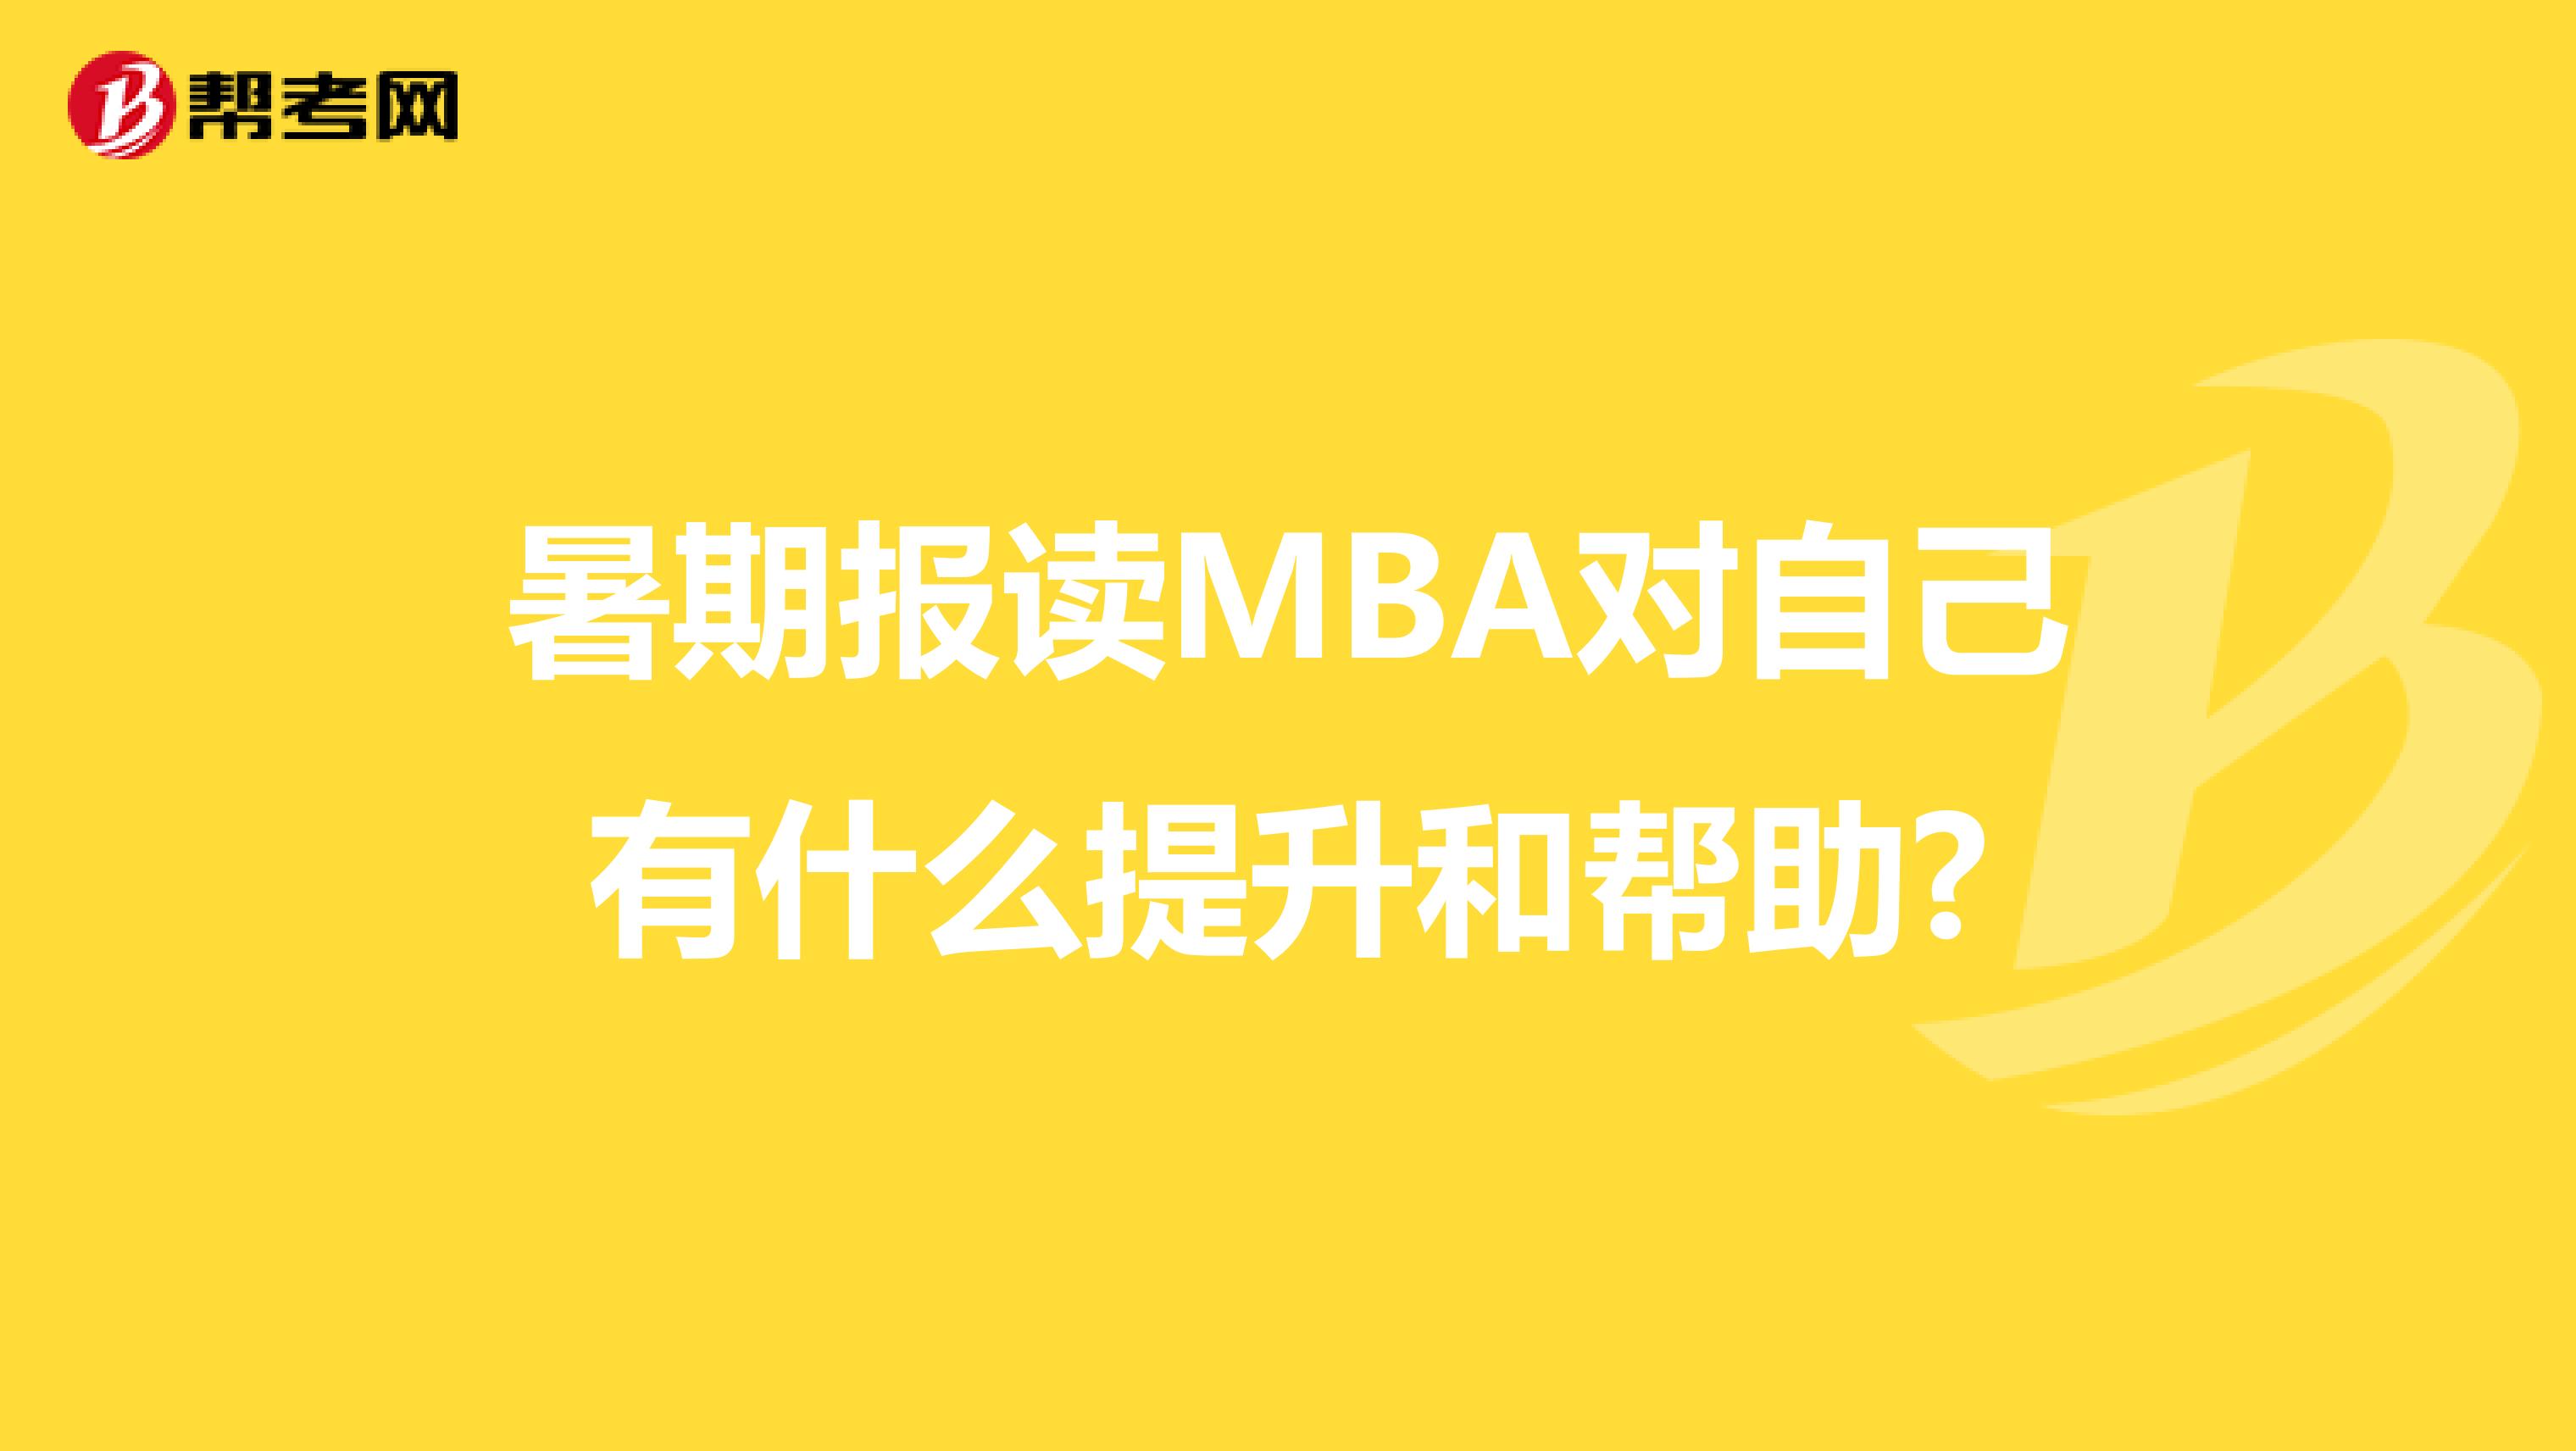 暑期报读MBA对自己有什么提升和帮助?